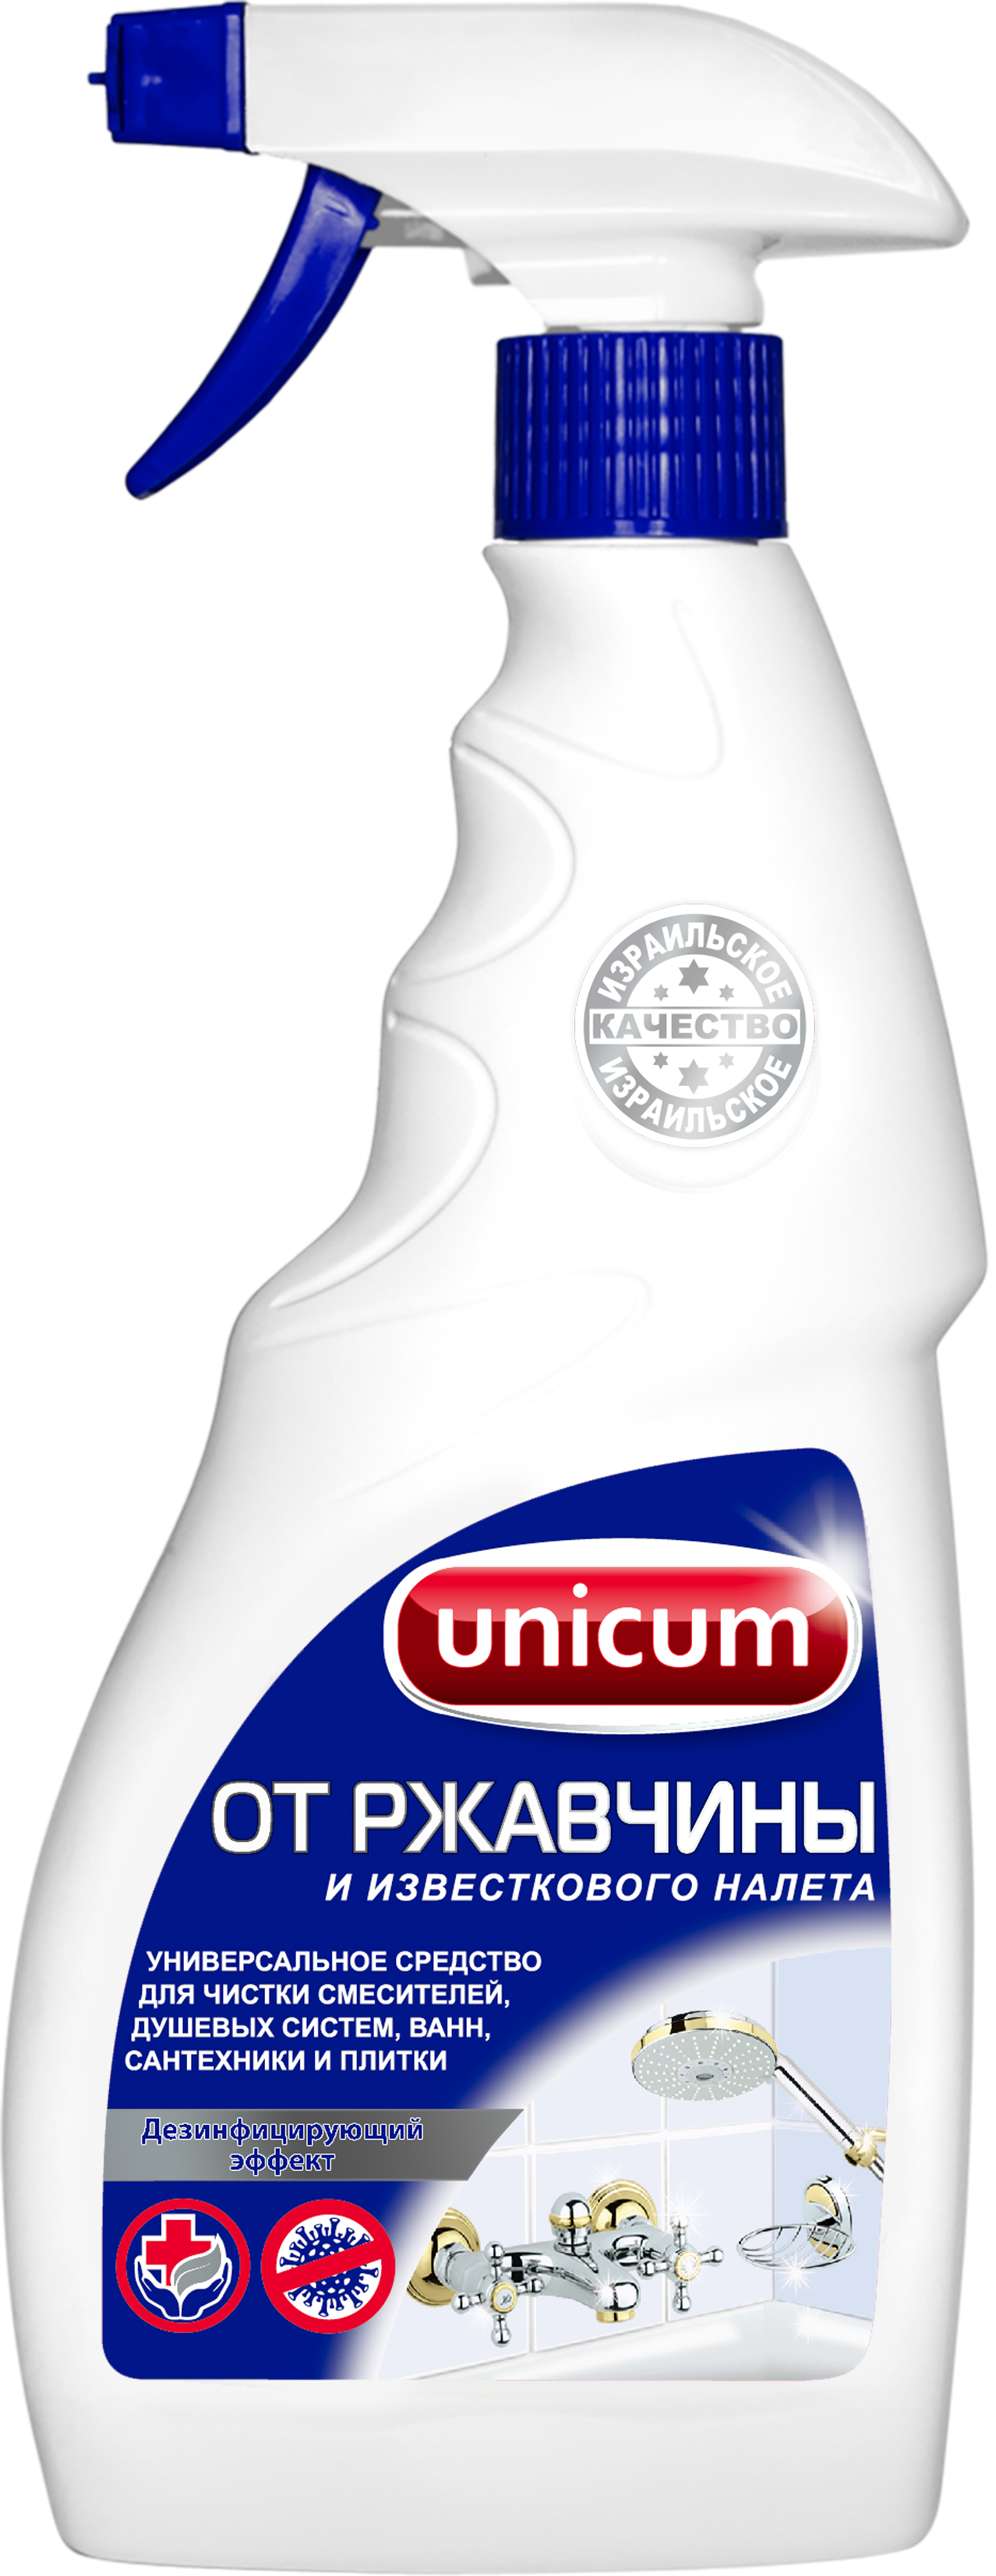 Средство для удаления известкового налета Unicum 500 мл